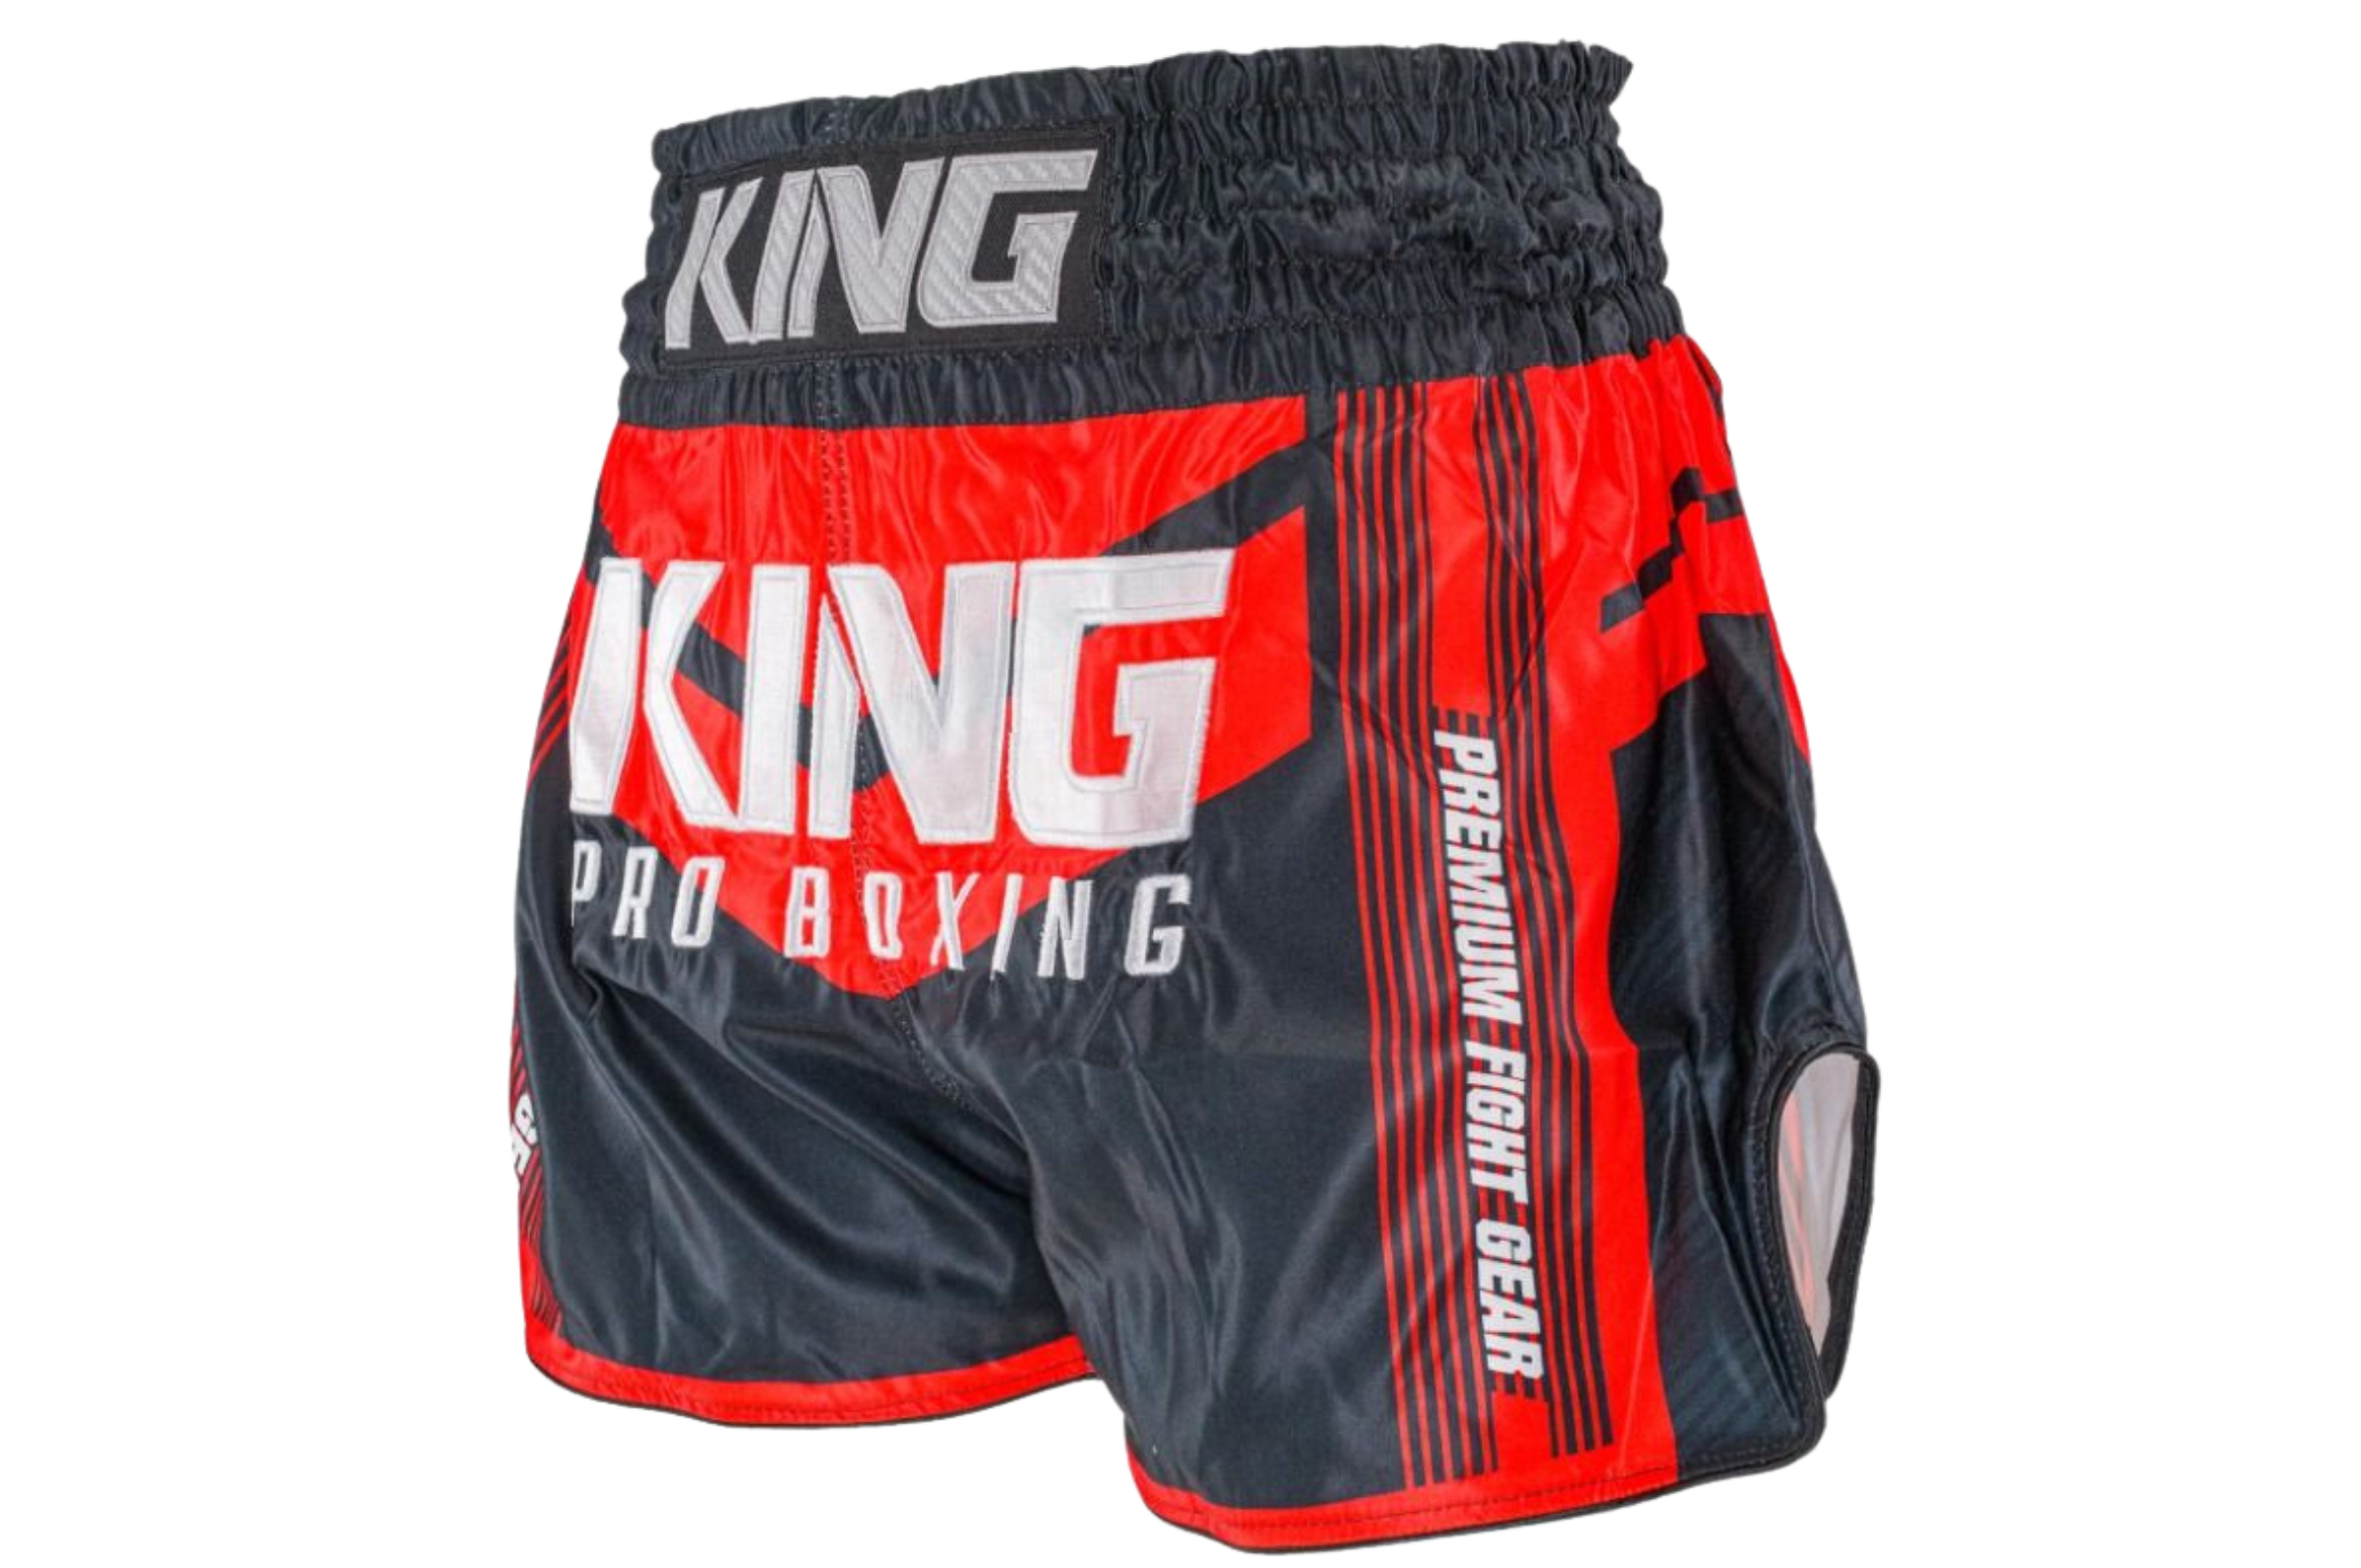 Super Pro Stripes Thai Boxing Short - Black/Red